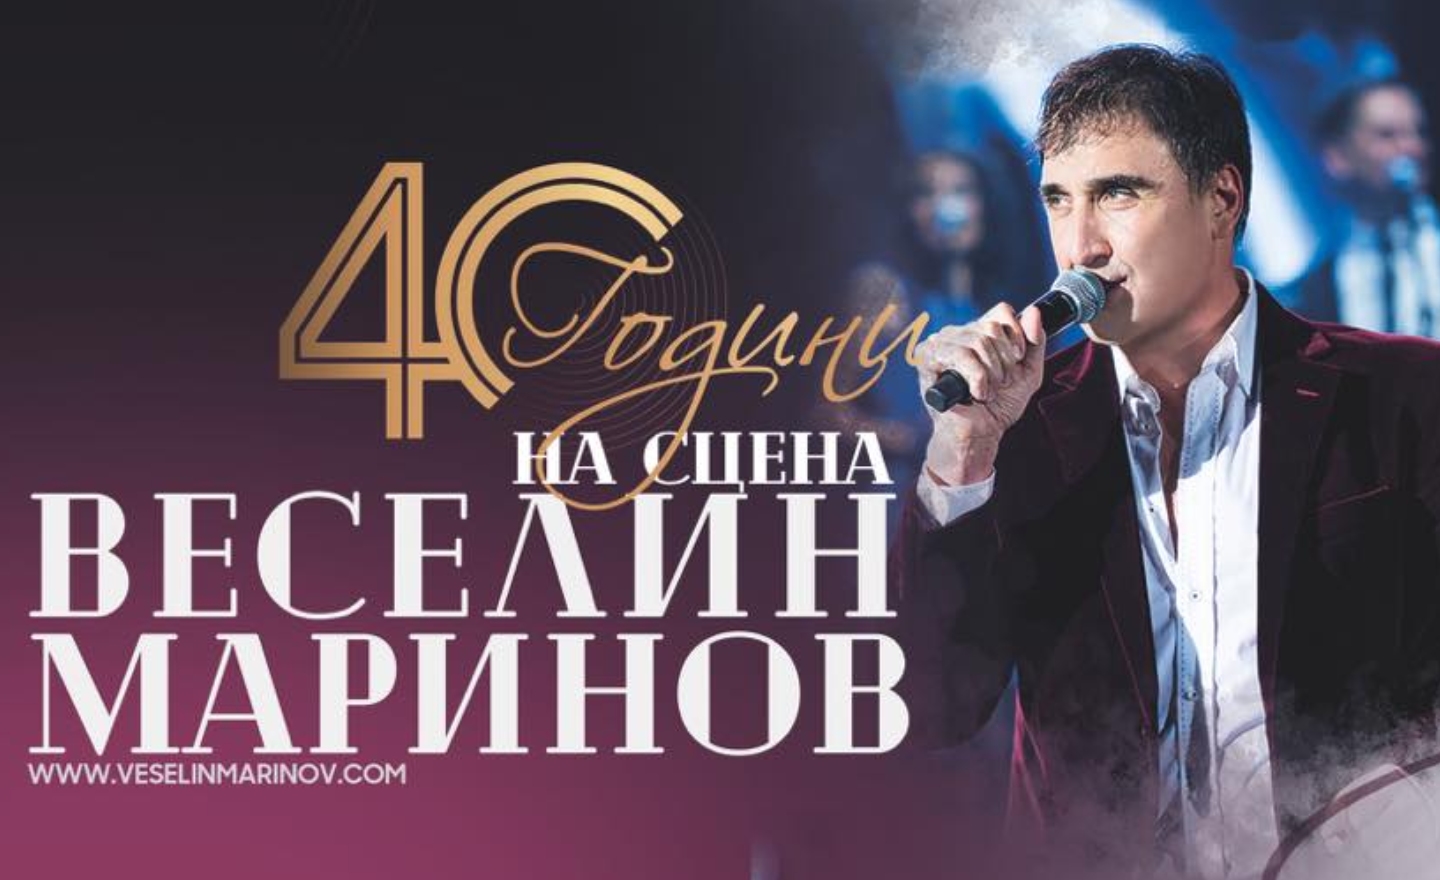 Веселин Маринов стартира турнето “40 години на сцена”